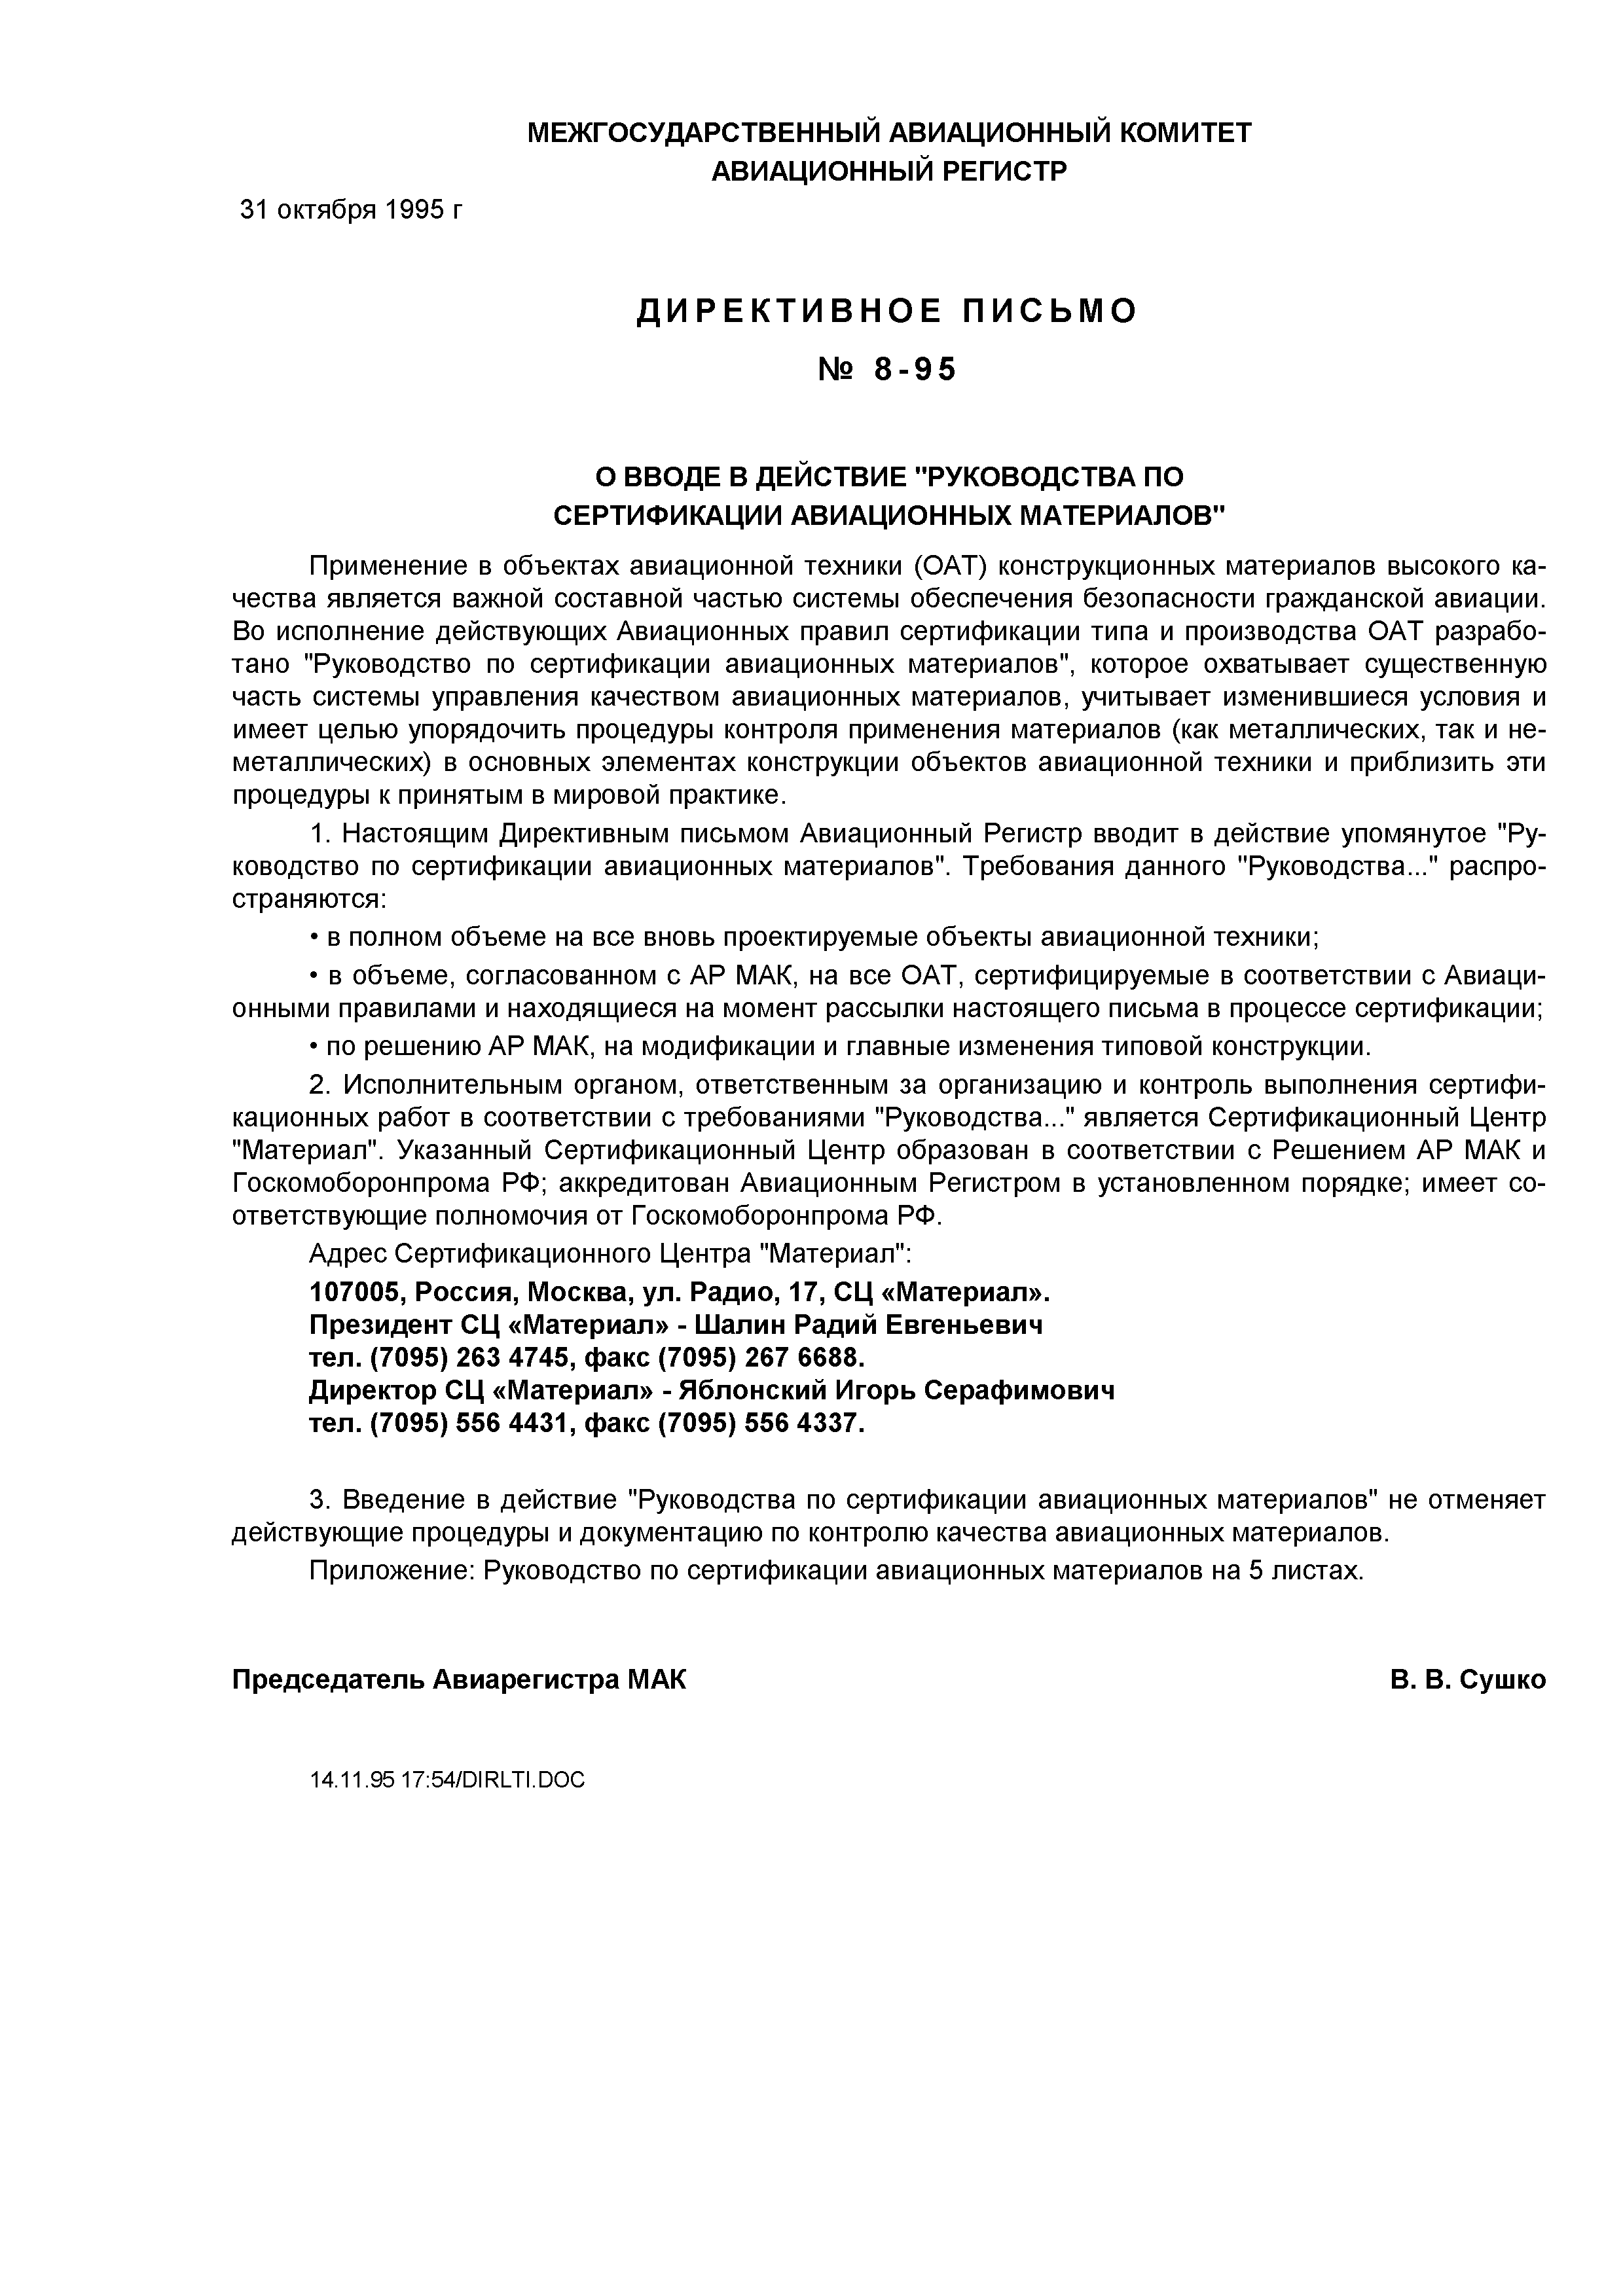 Директивное письмо 8-95